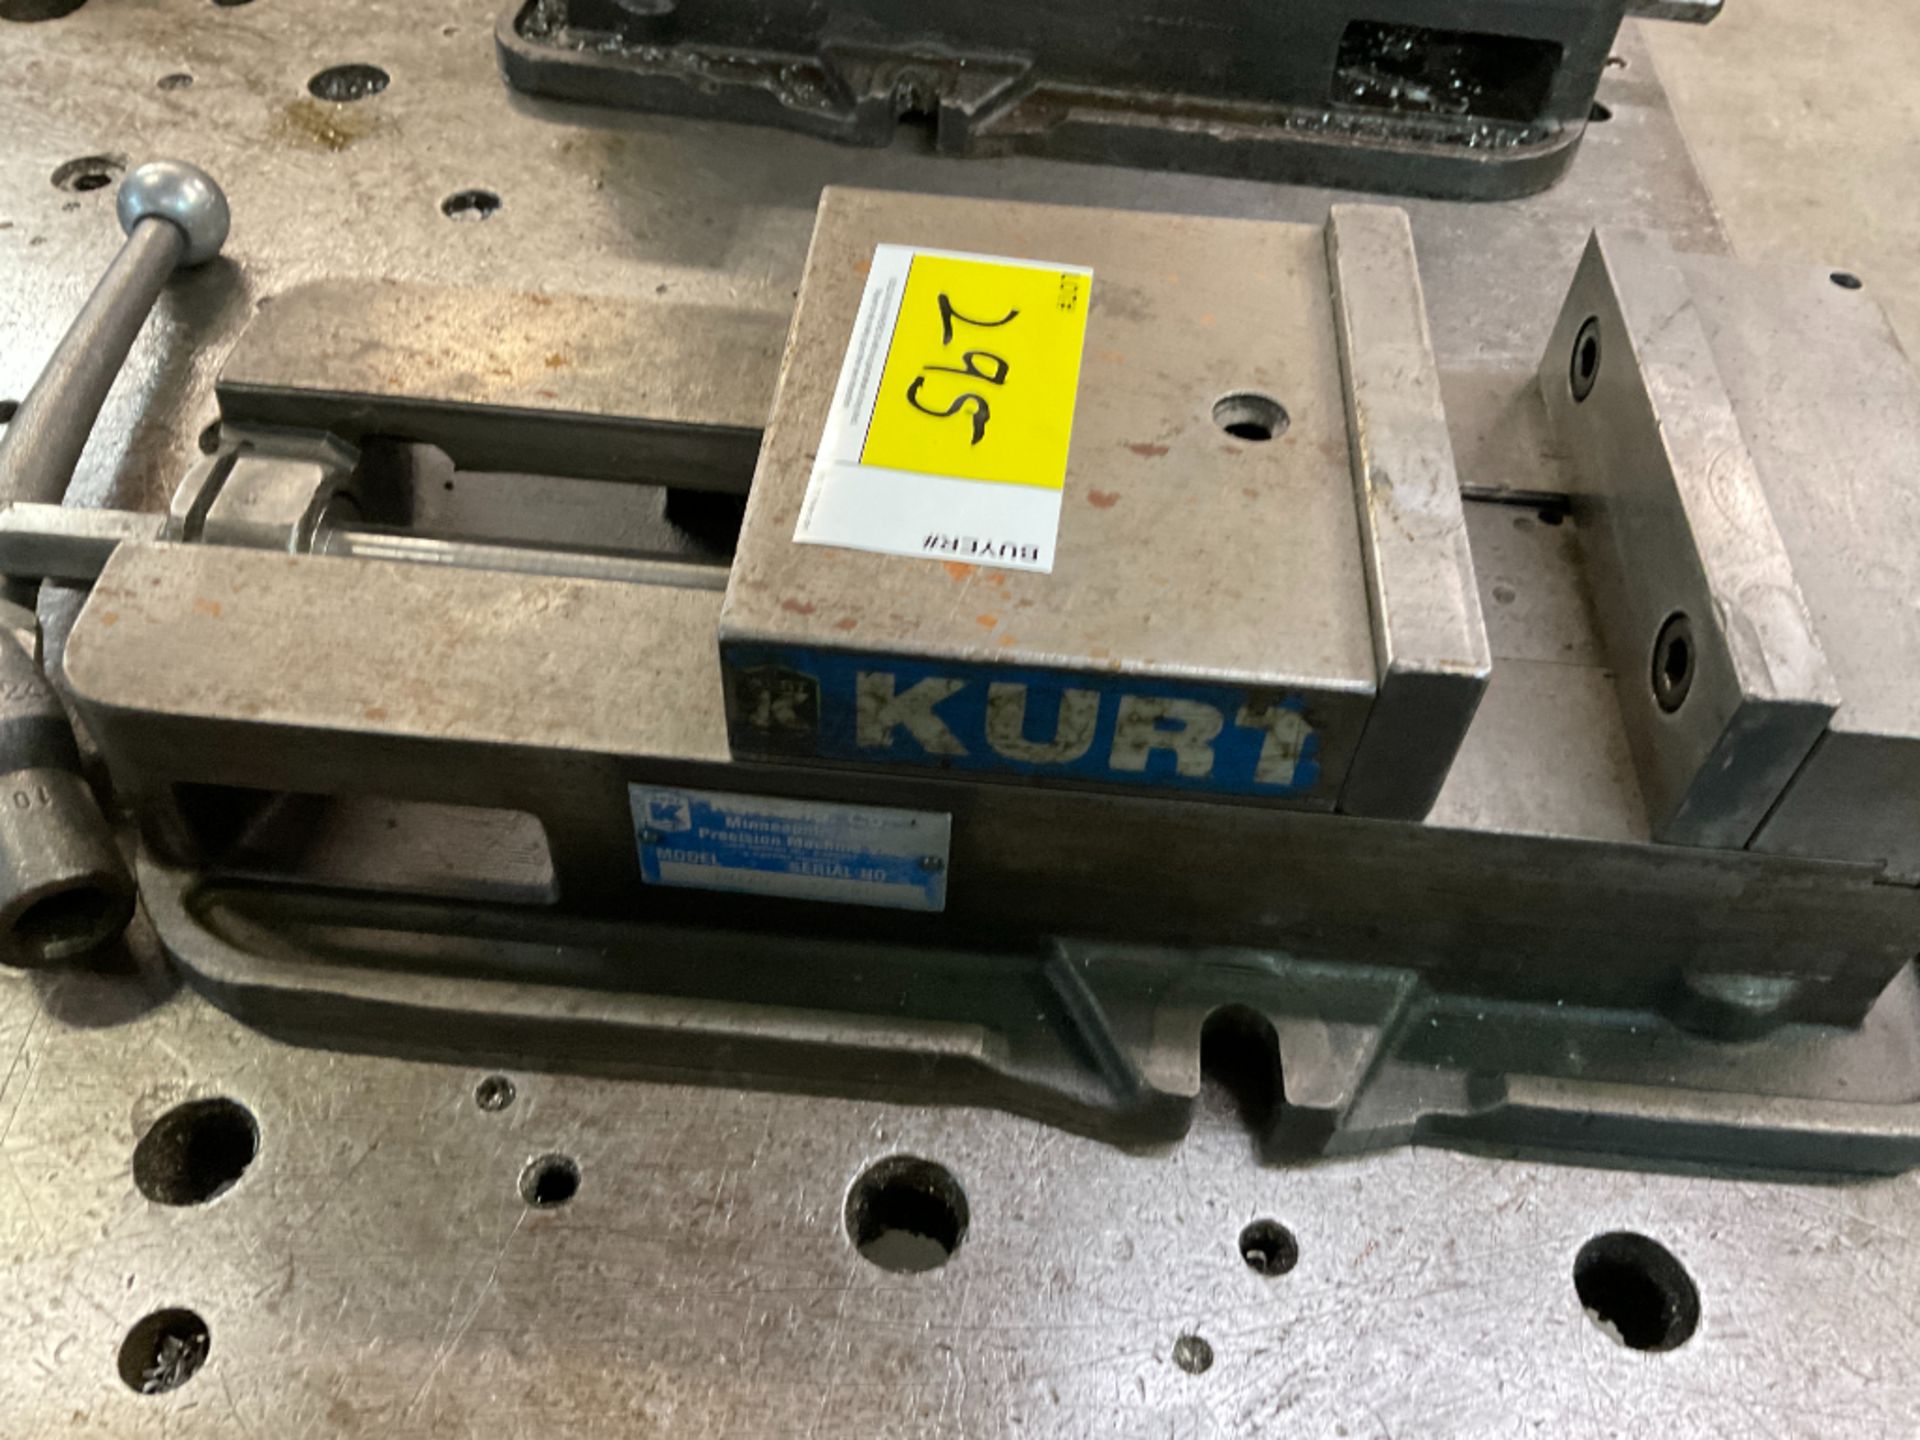 Kurt D675 Machine Vise - Image 4 of 4